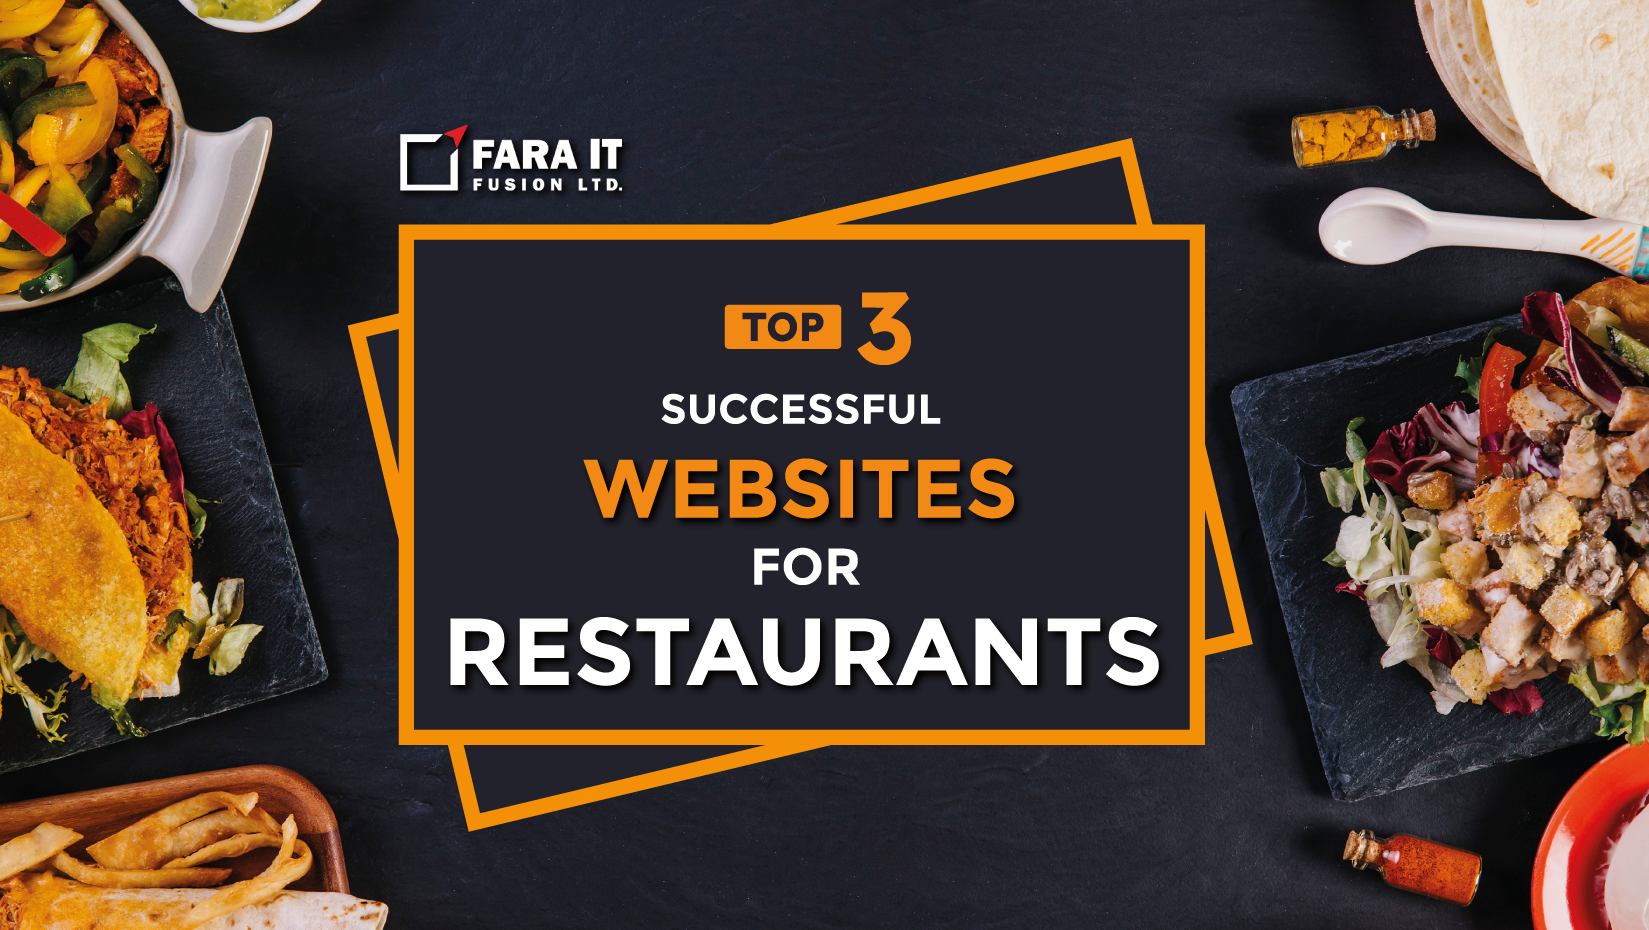 Top 3 Successful Websites for Restaurants